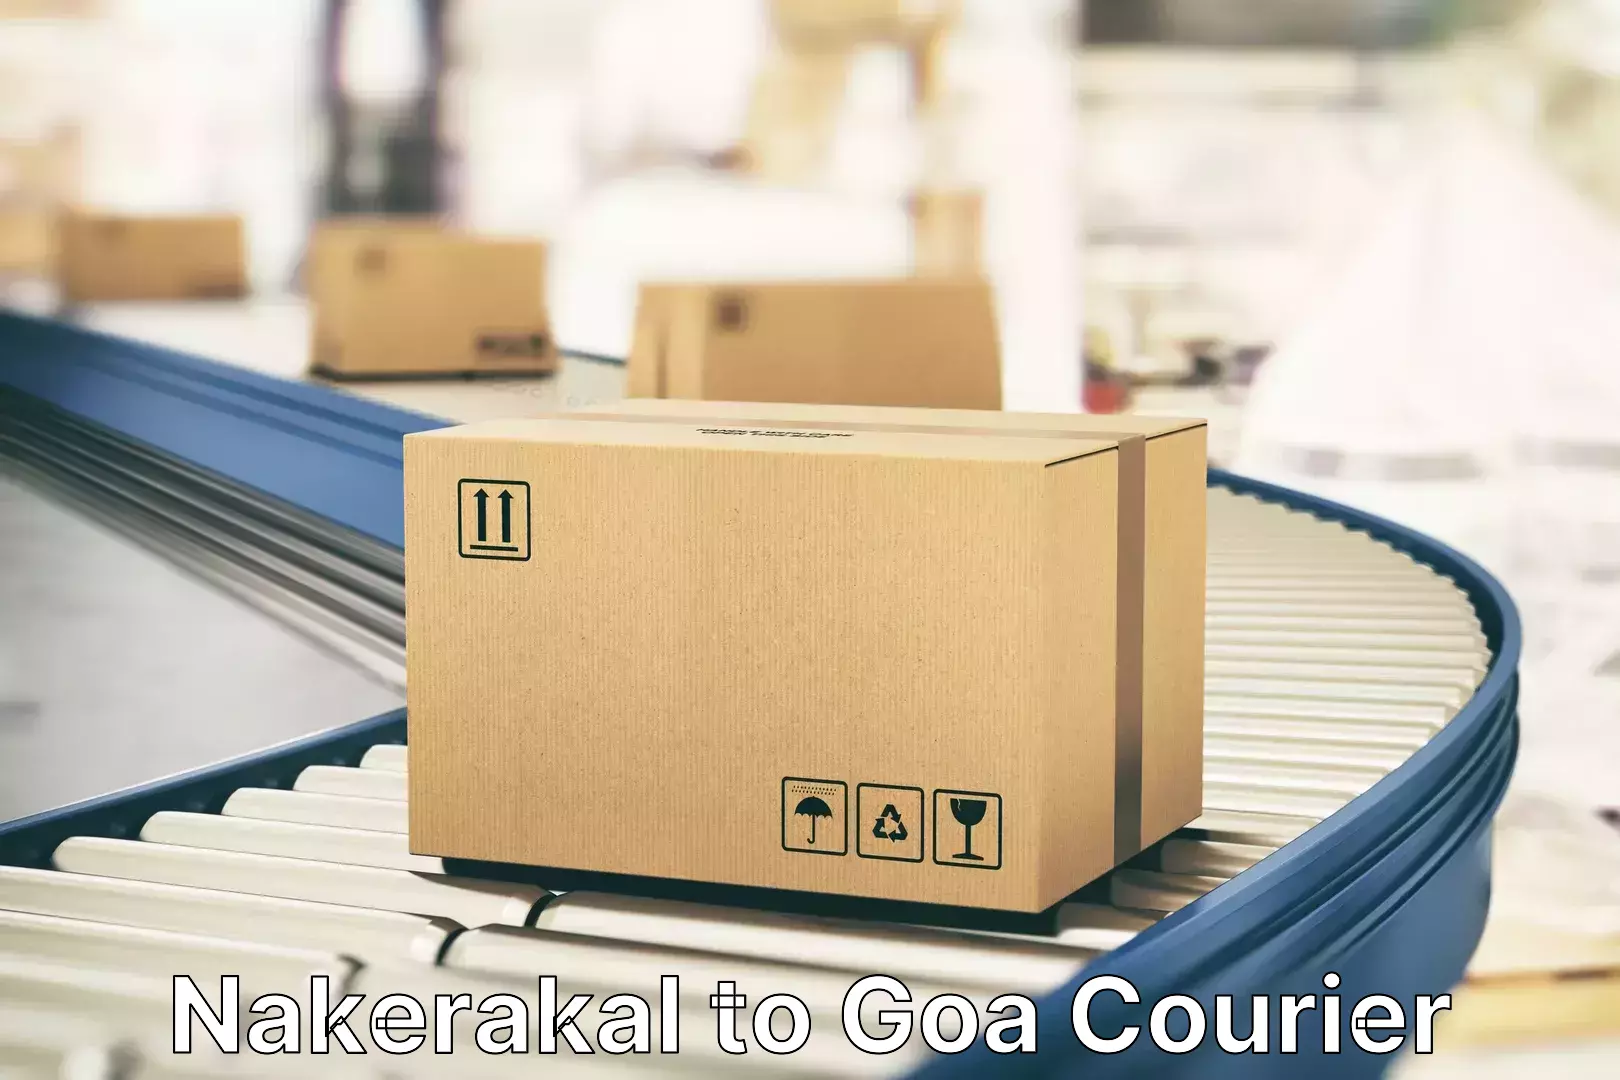 Hassle-free luggage shipping Nakerakal to Margao